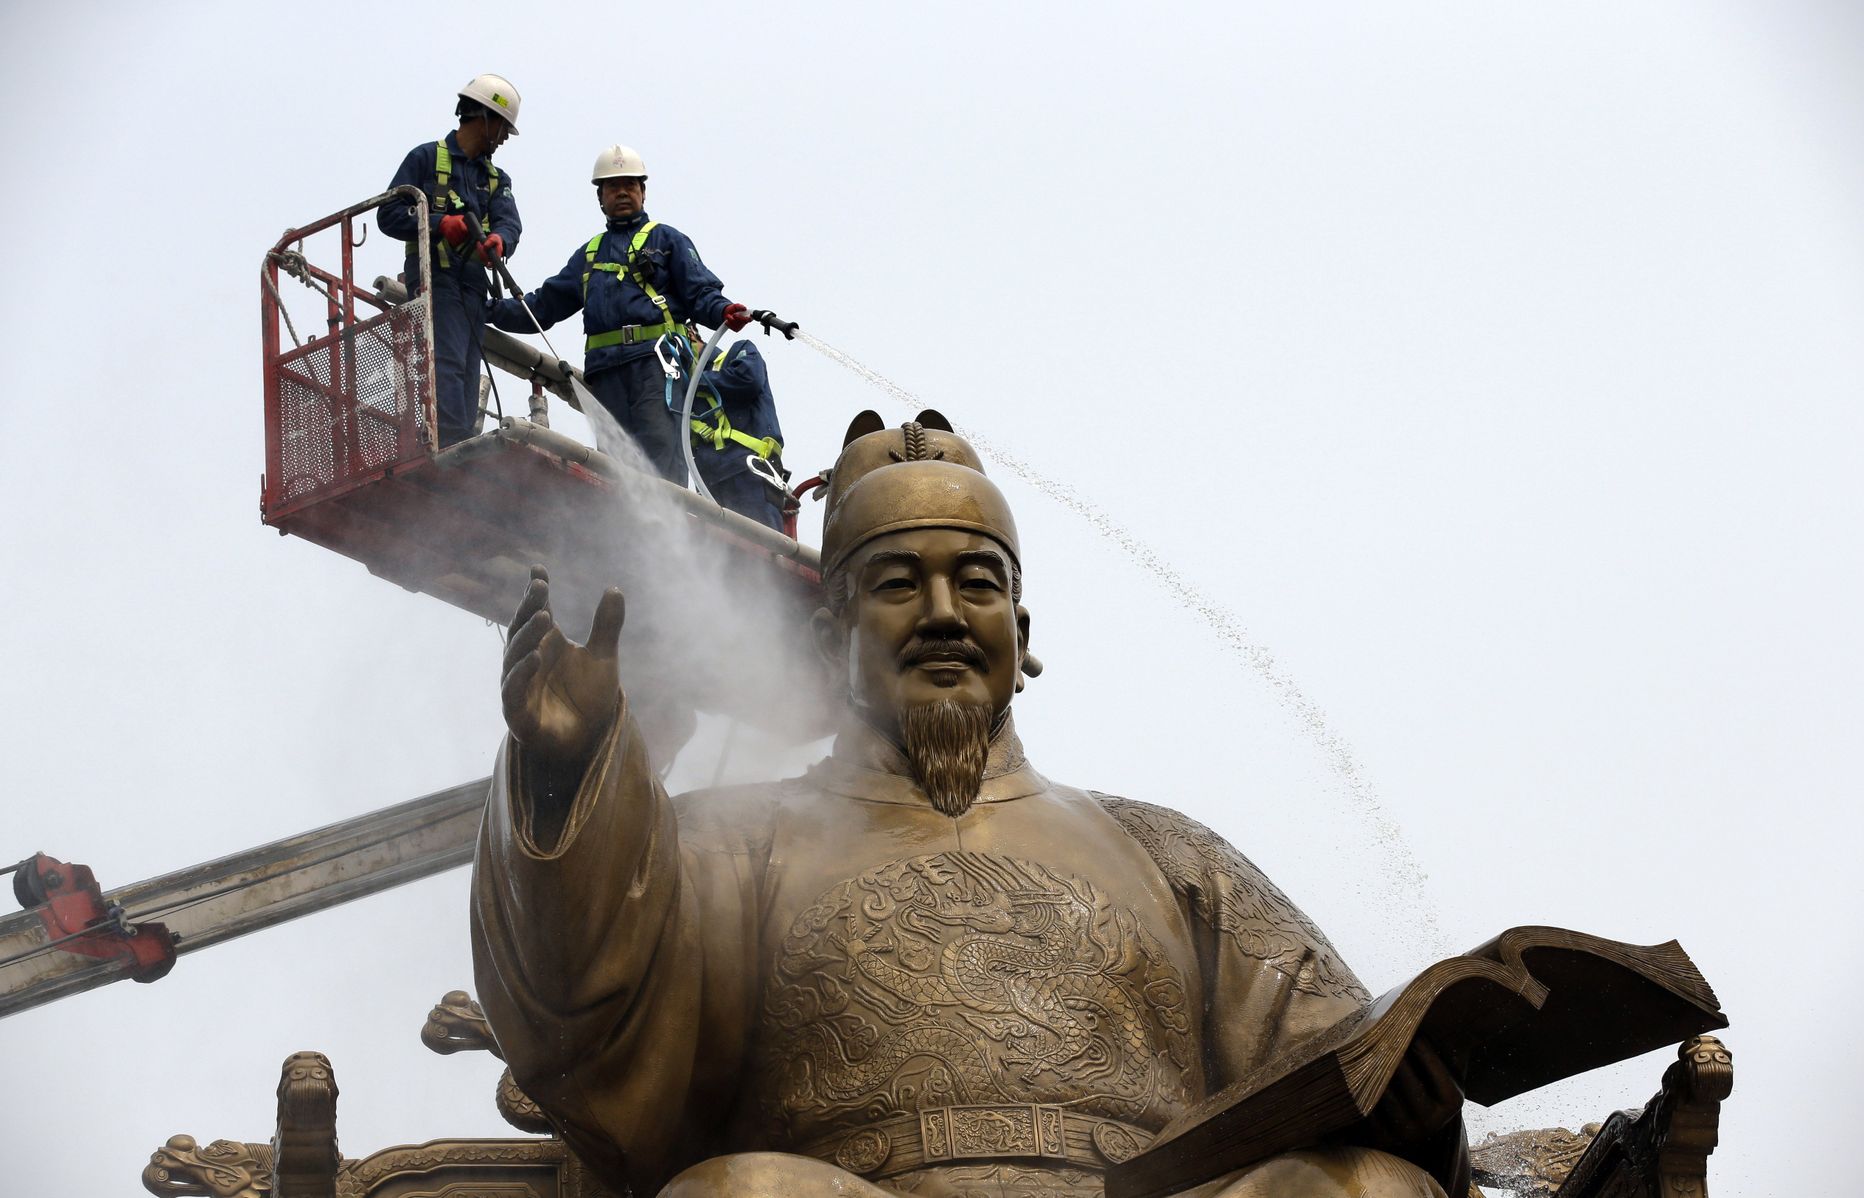 Keiser Sejongi kuju pesemine Seoulis